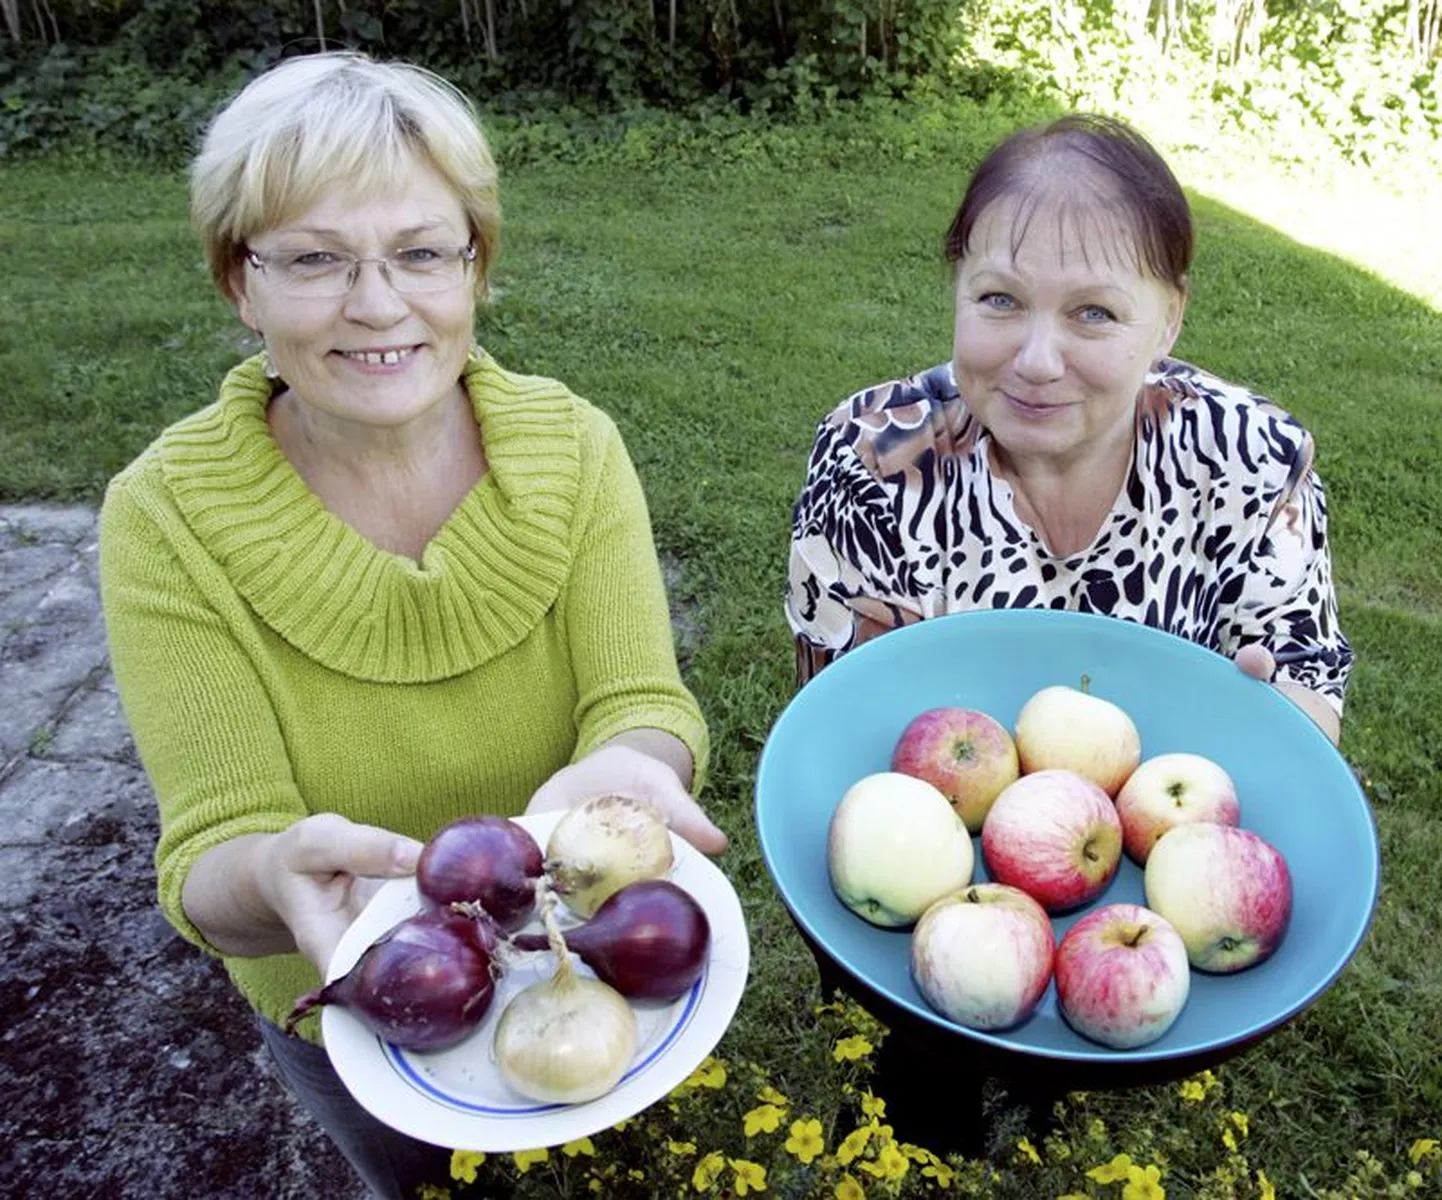 Leeni Janno (vasakul) ja Milvi Tubli loobusid aiasaaduste ülejääkidega kauplemisest, sest pelgasid bürokraatiat.